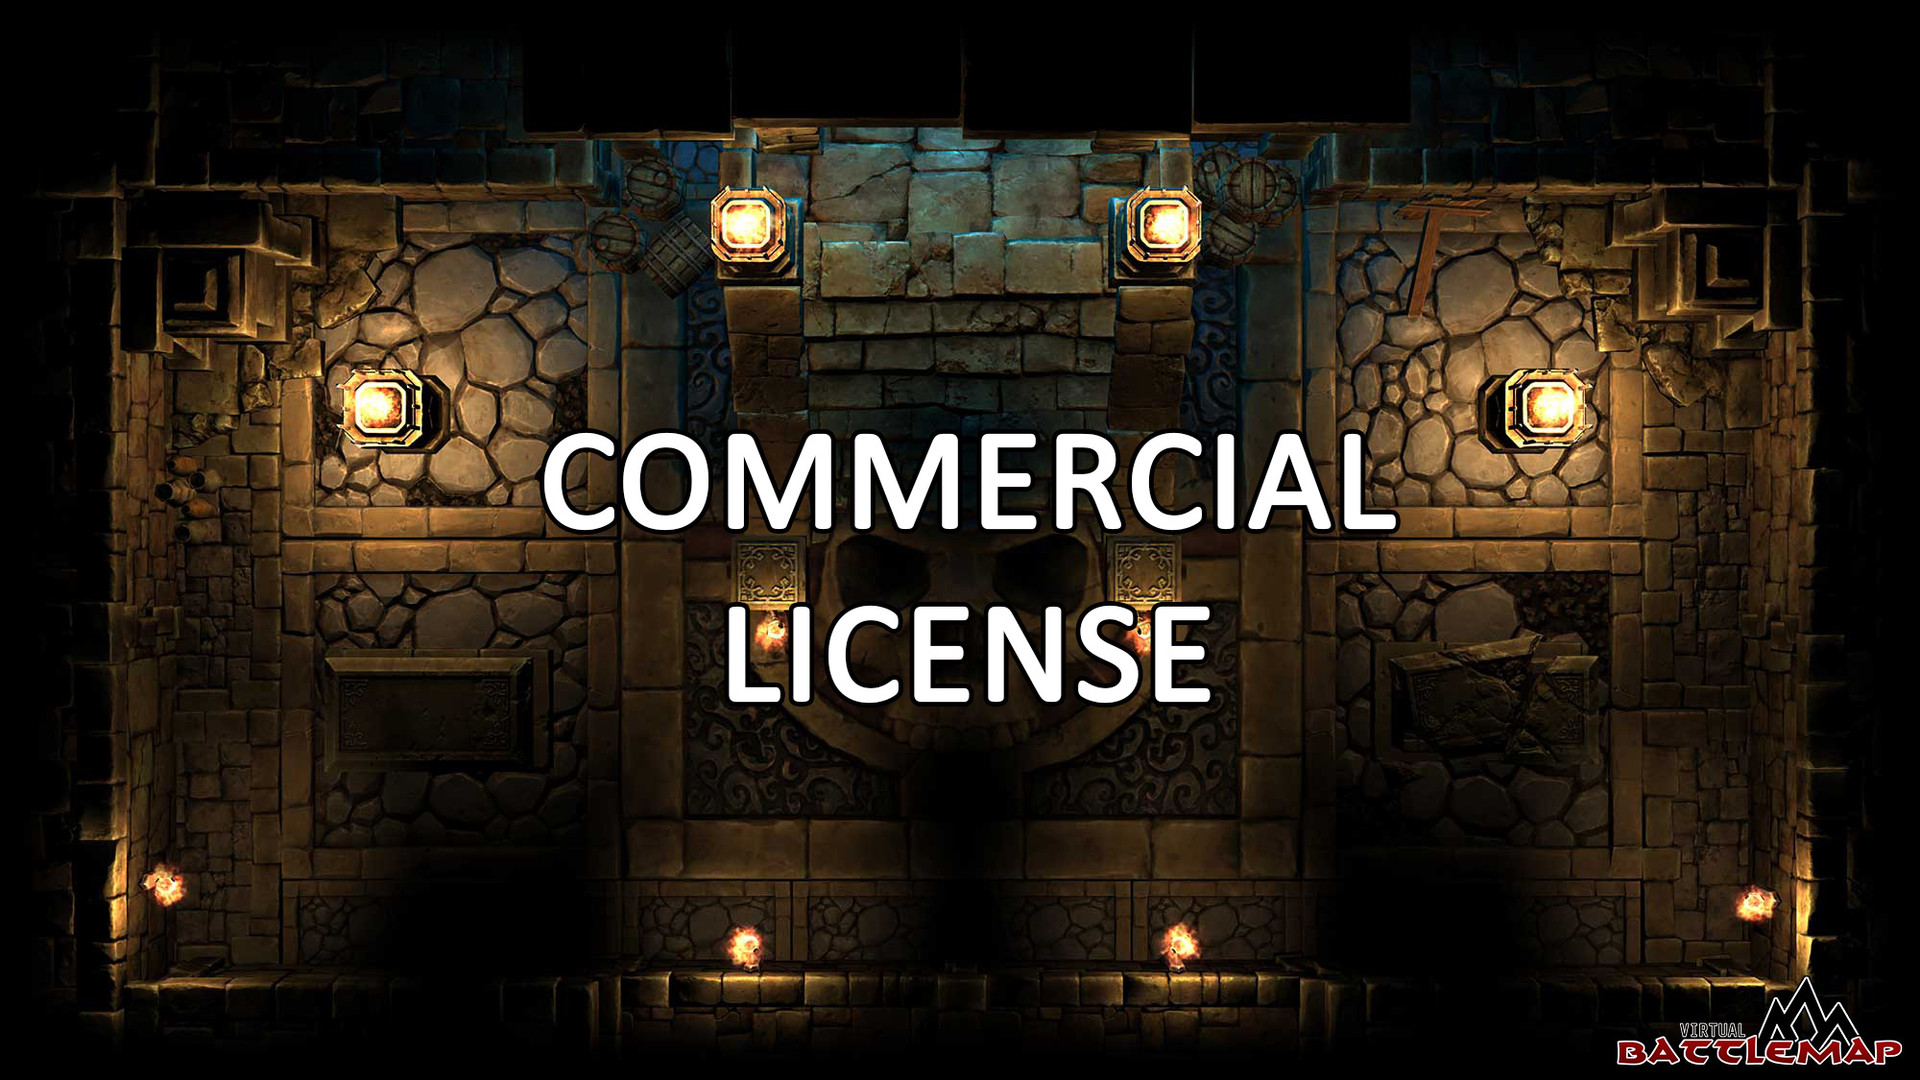 Virtual Battlemap Commercial License Featured Screenshot #1